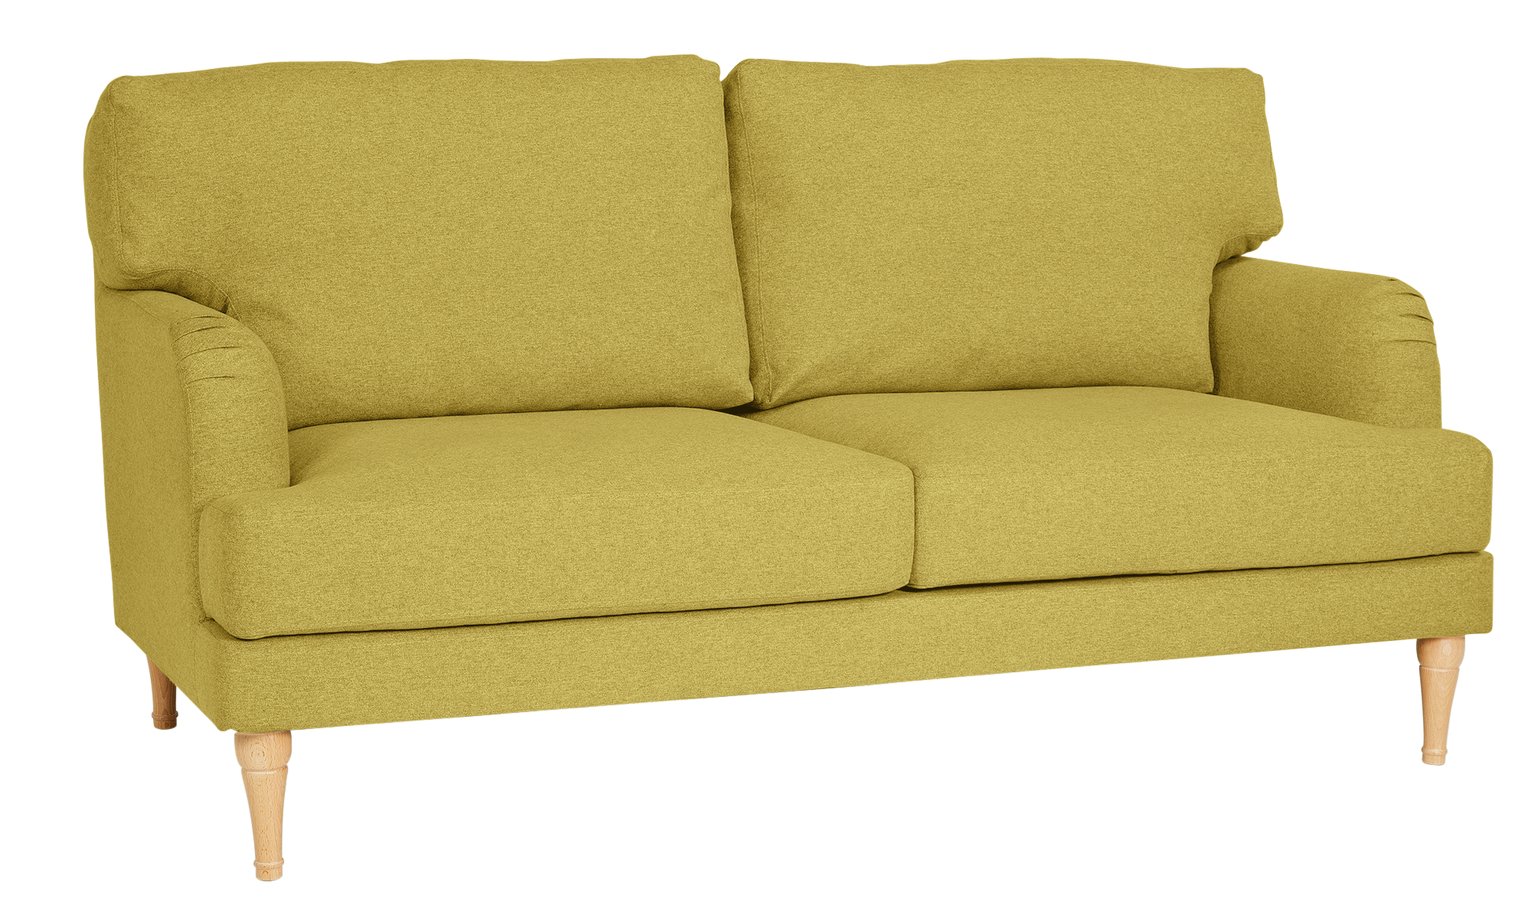 Argos Home Dune 3 Seater Fabric Sofa Review